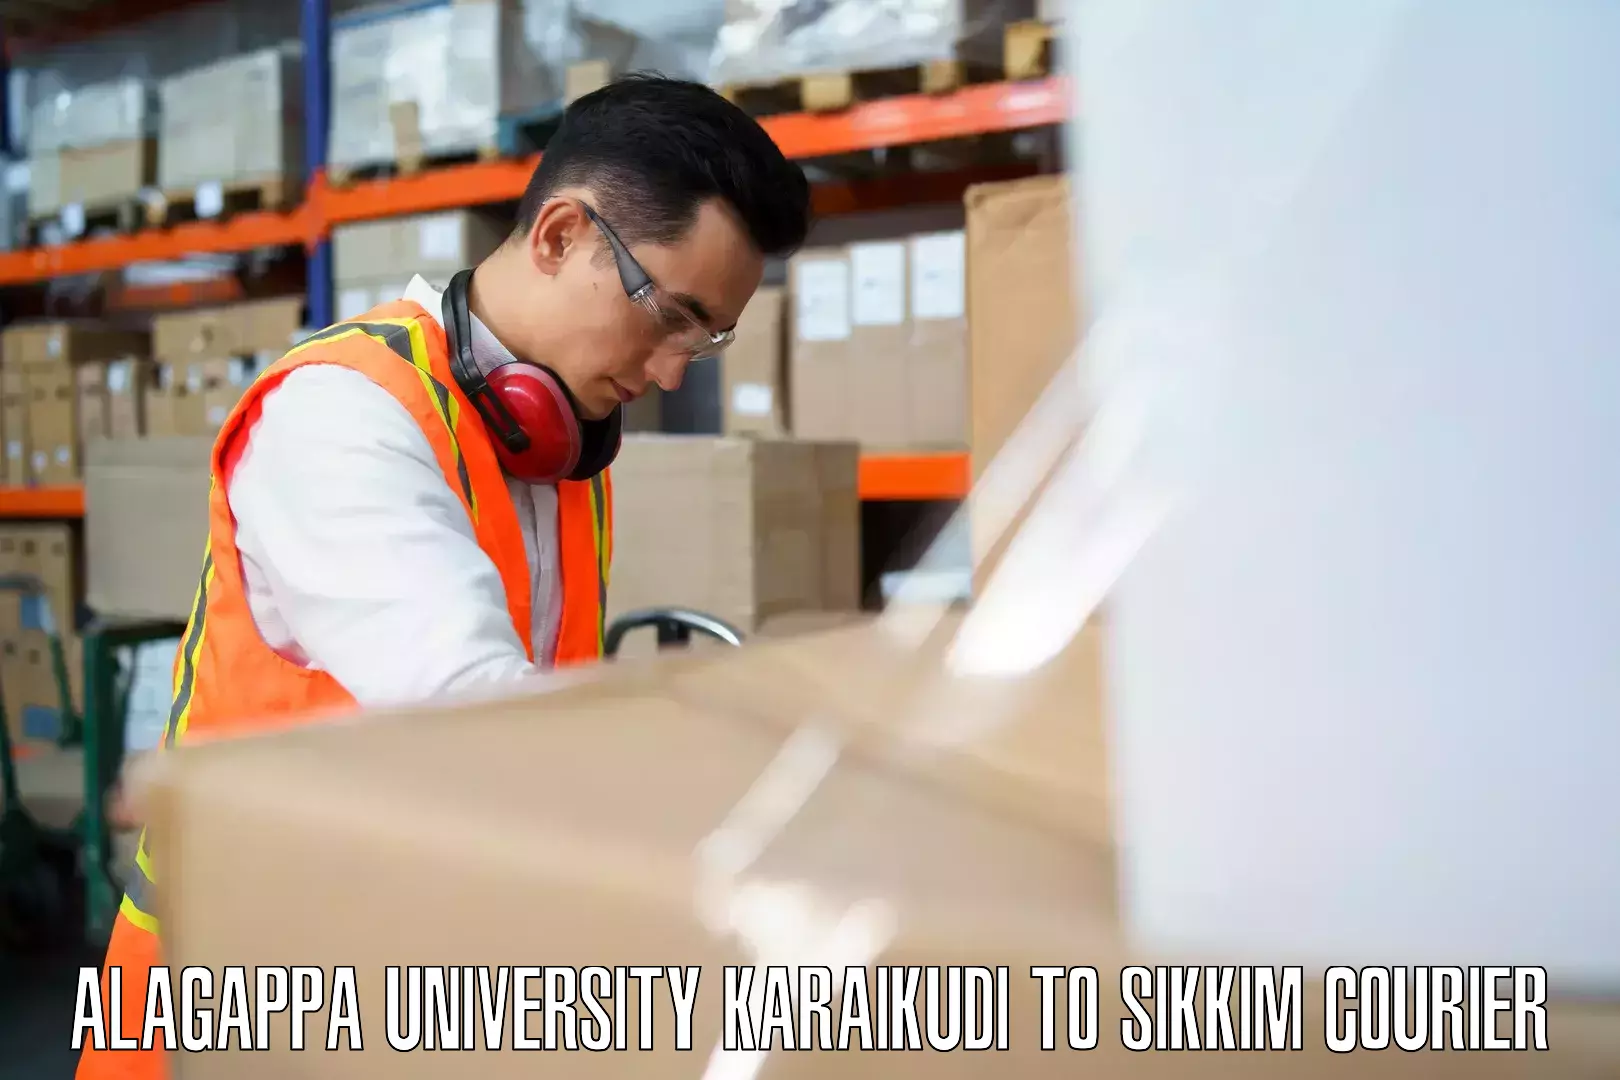 Luggage dispatch service Alagappa University Karaikudi to Geyzing